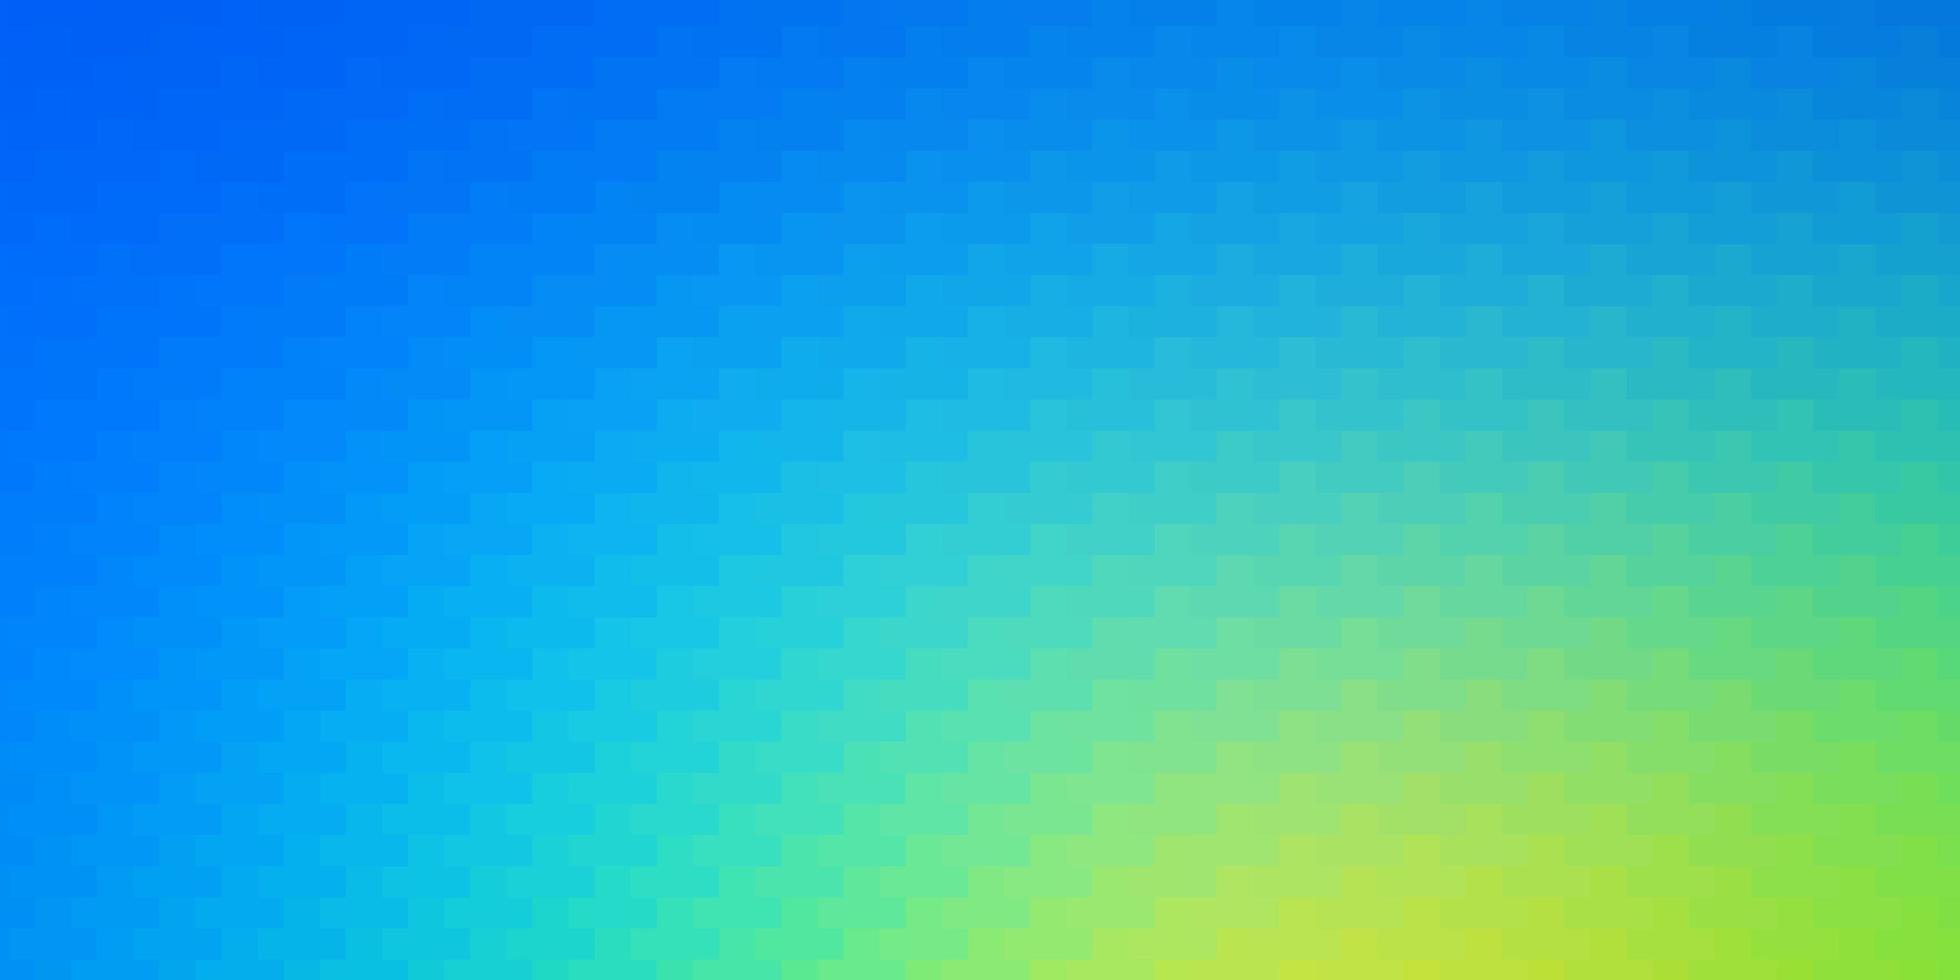 Fondo de vector azul claro, verde con rectángulos. Ilustración de degradado abstracto con rectángulos. plantilla para teléfonos móviles.